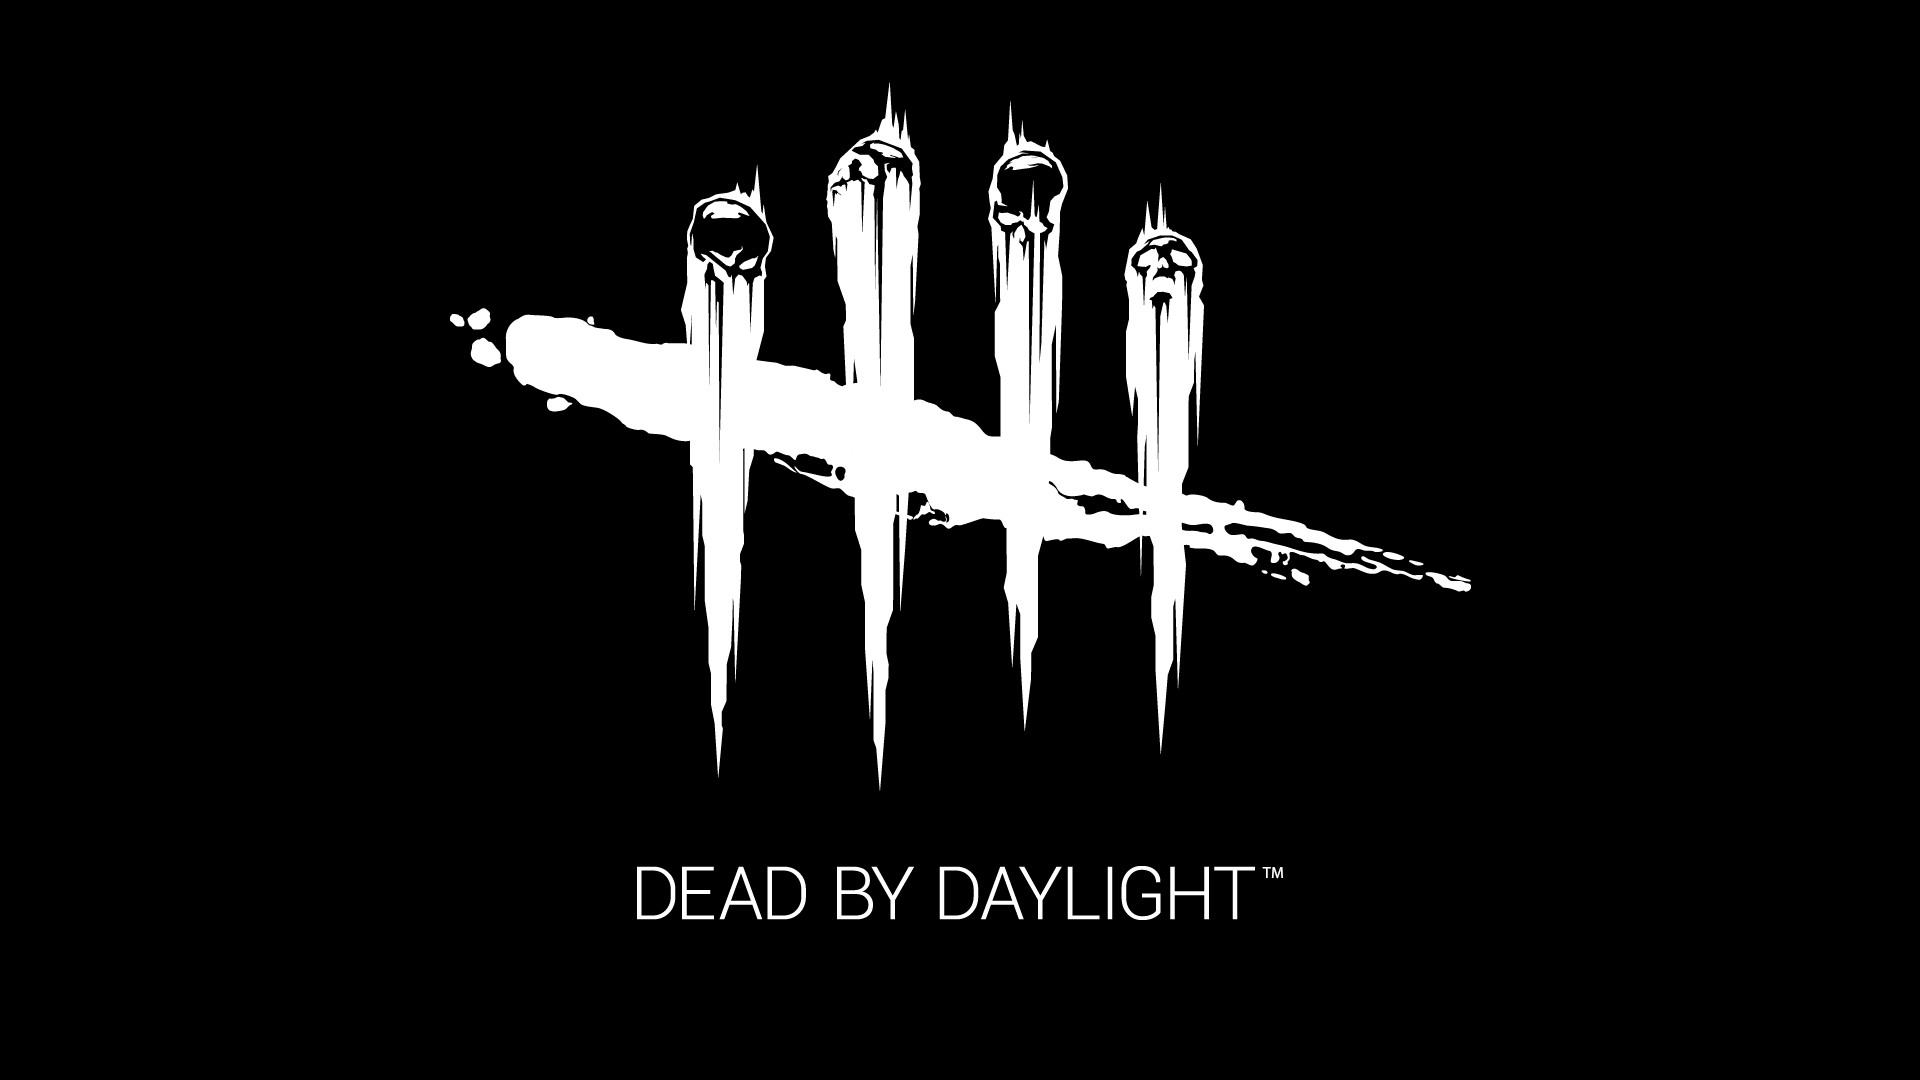 Dead By Daylight 新たな能力を持つ新キラー リージョンの情報まとめ デッドバイデイライト Deadbydaylight Moemee モエミー アニメ 漫画 ゲーム コスプレなどの情報が盛りだくさん